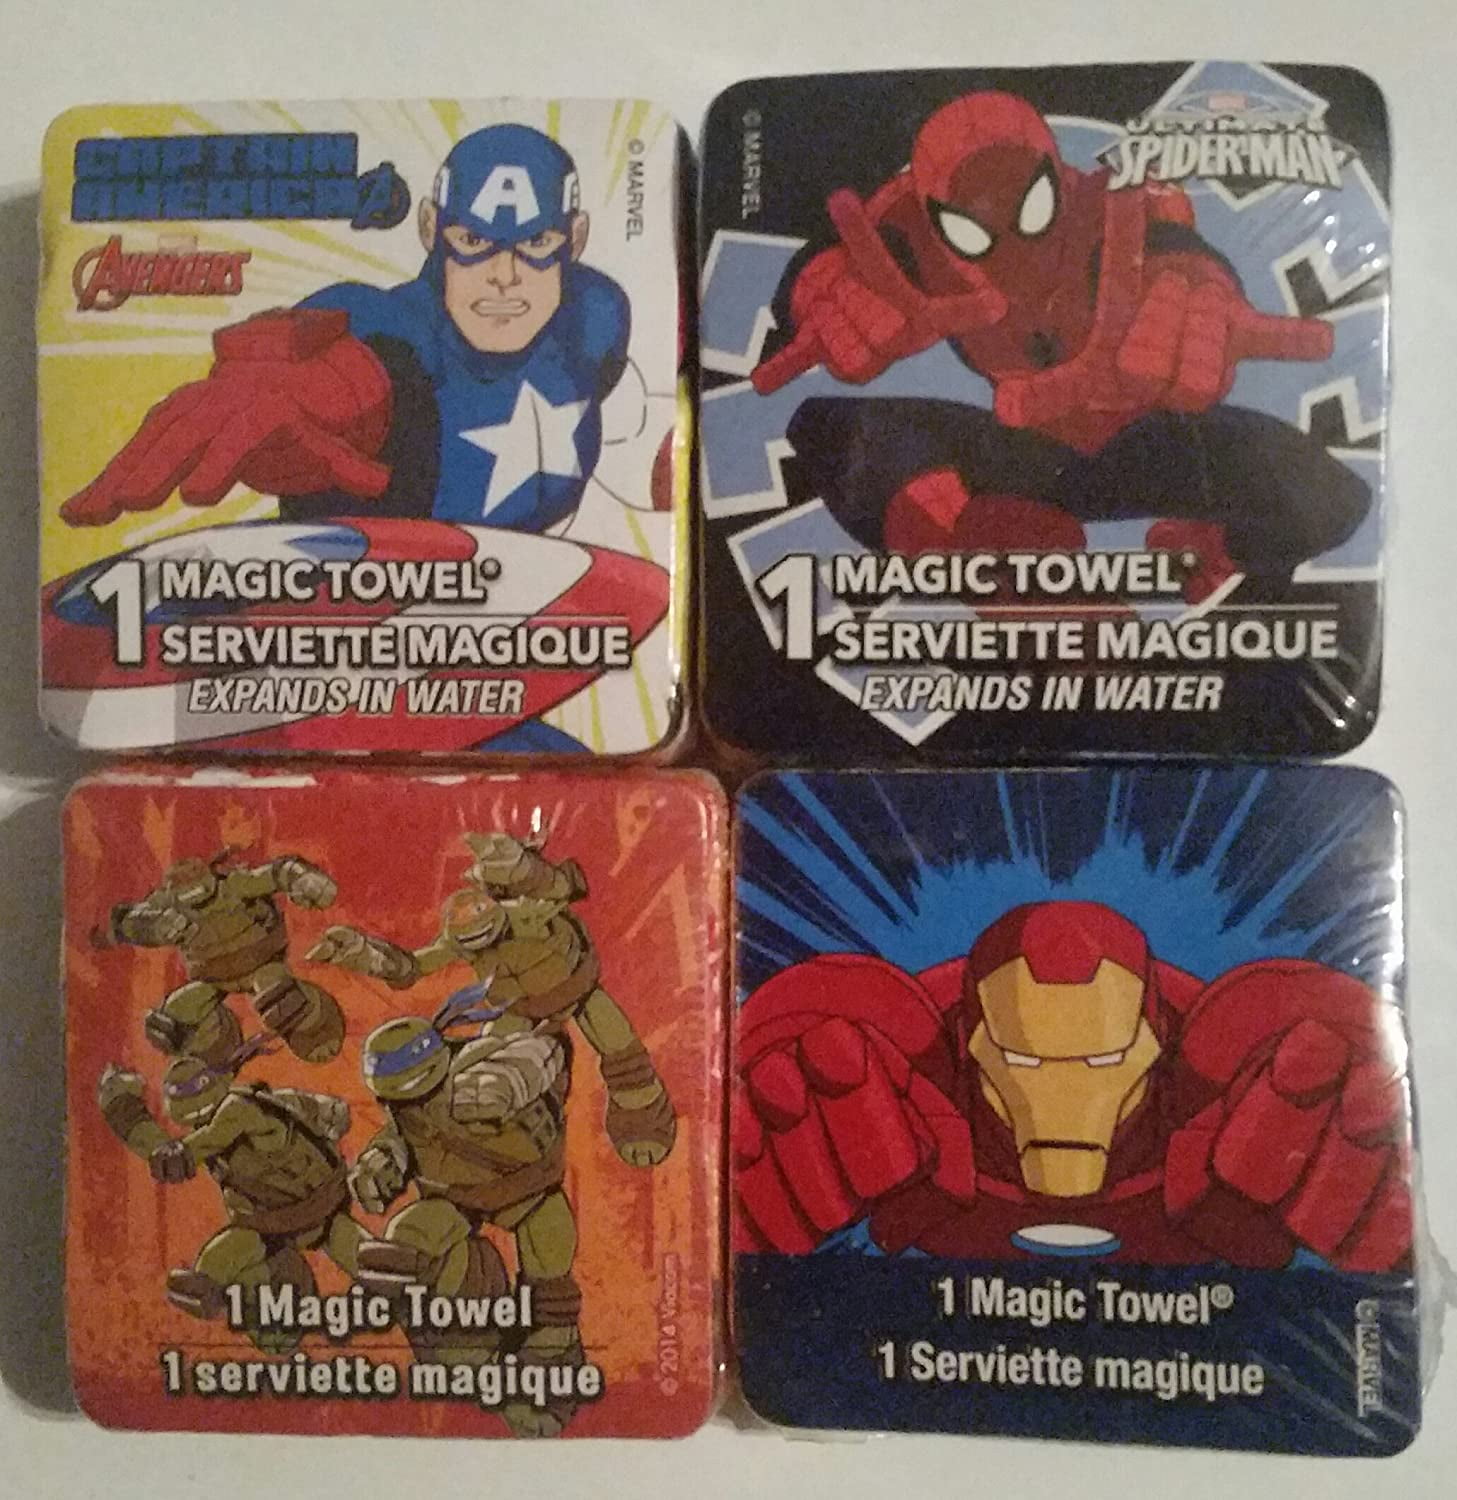 100% coton Serviette Magique Marvel Avengers Iron Man Magic Towel 